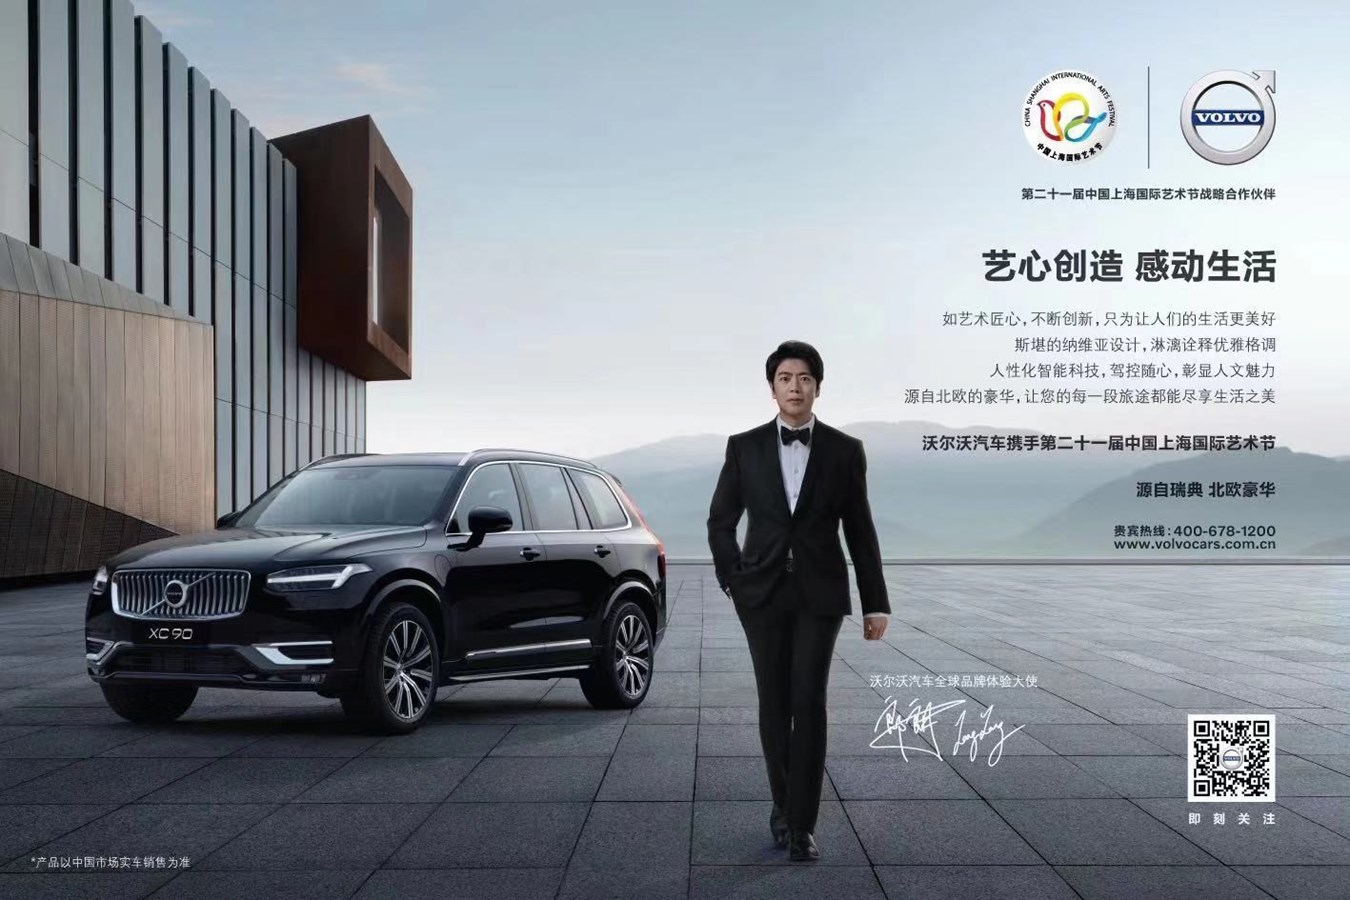 沃尔沃汽车鼎力支持第二十一届中国上海国际艺术节